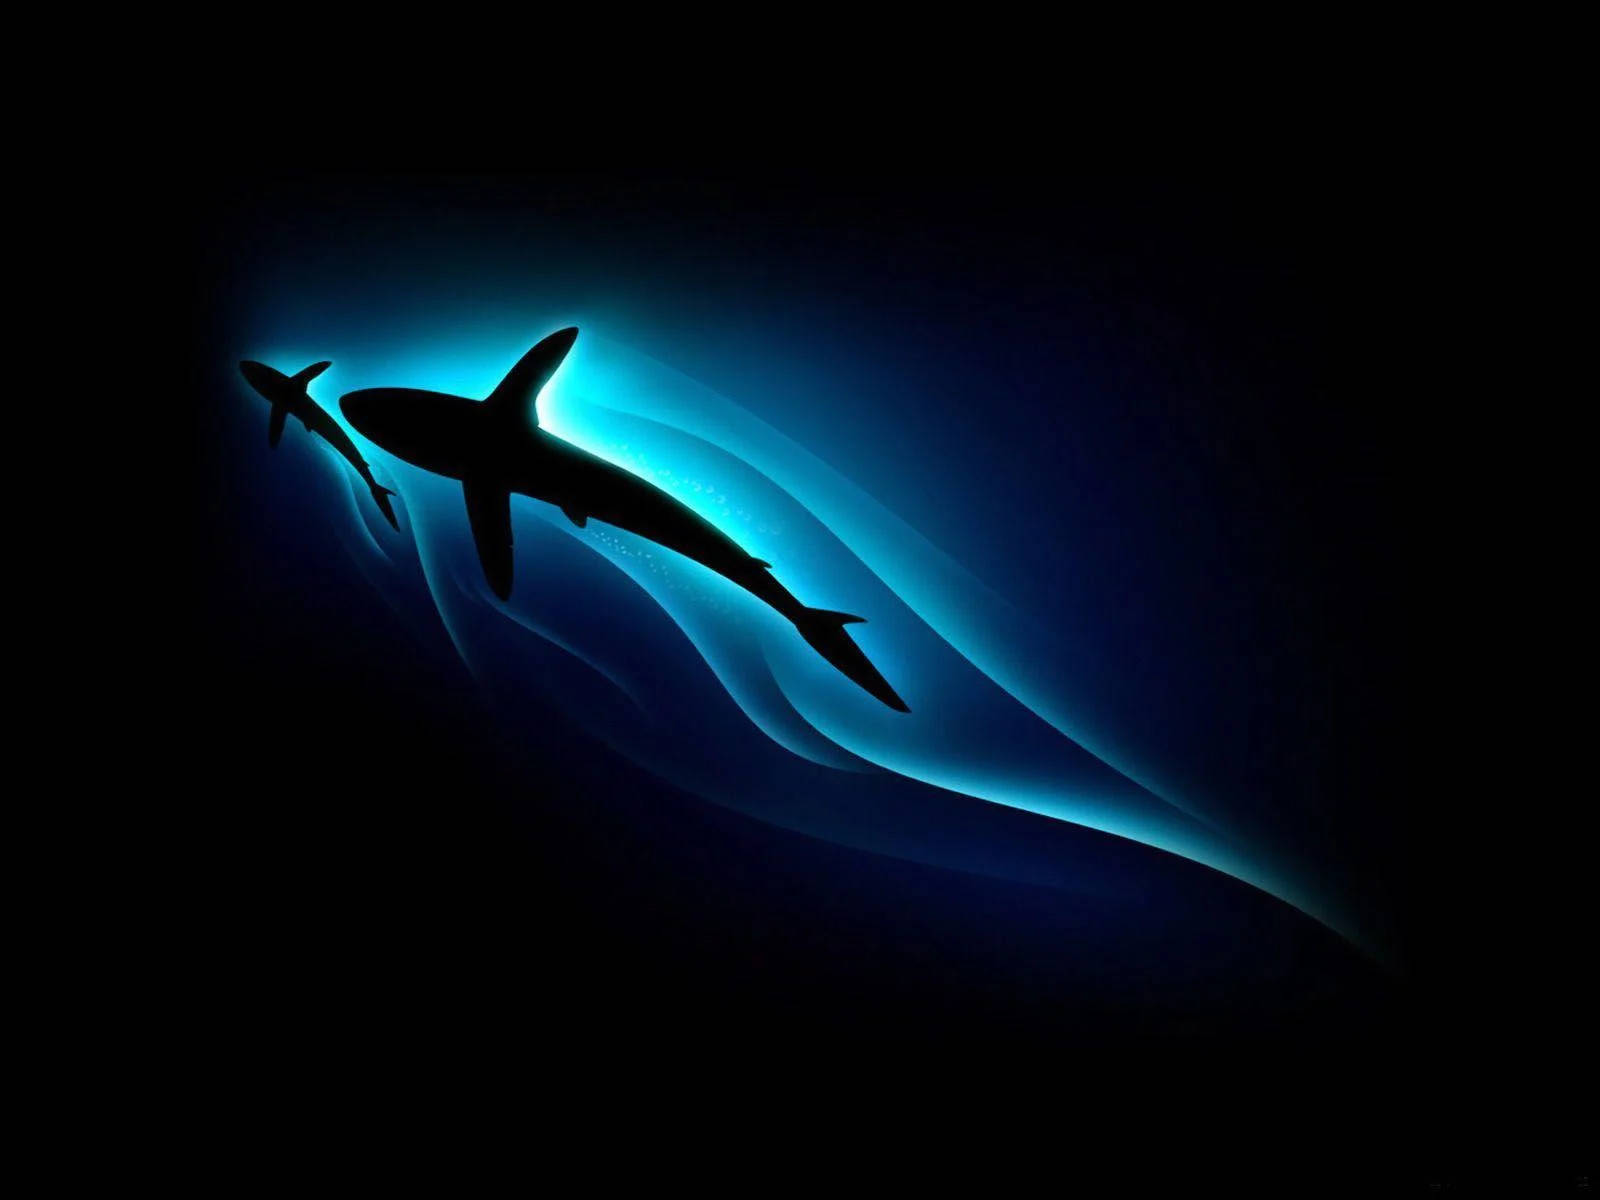 Stylish Sharks Silhouettes Background